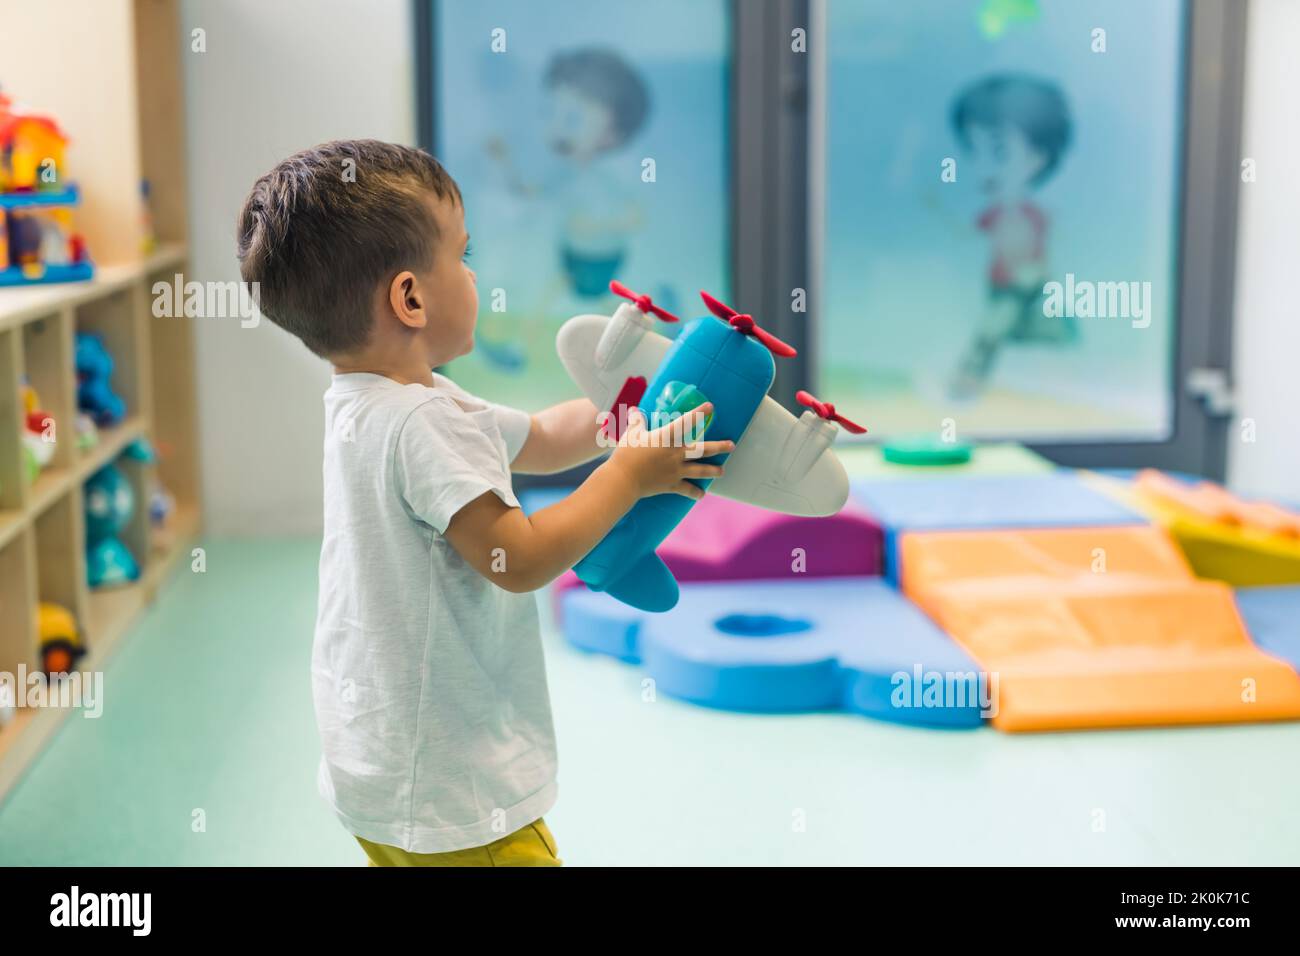 Immaginazione e sviluppo del pensiero creativo. Bambino che gioca con un giocattolo aereo in una stanza dei giochi della scuola materna. Foto di alta qualità Foto Stock